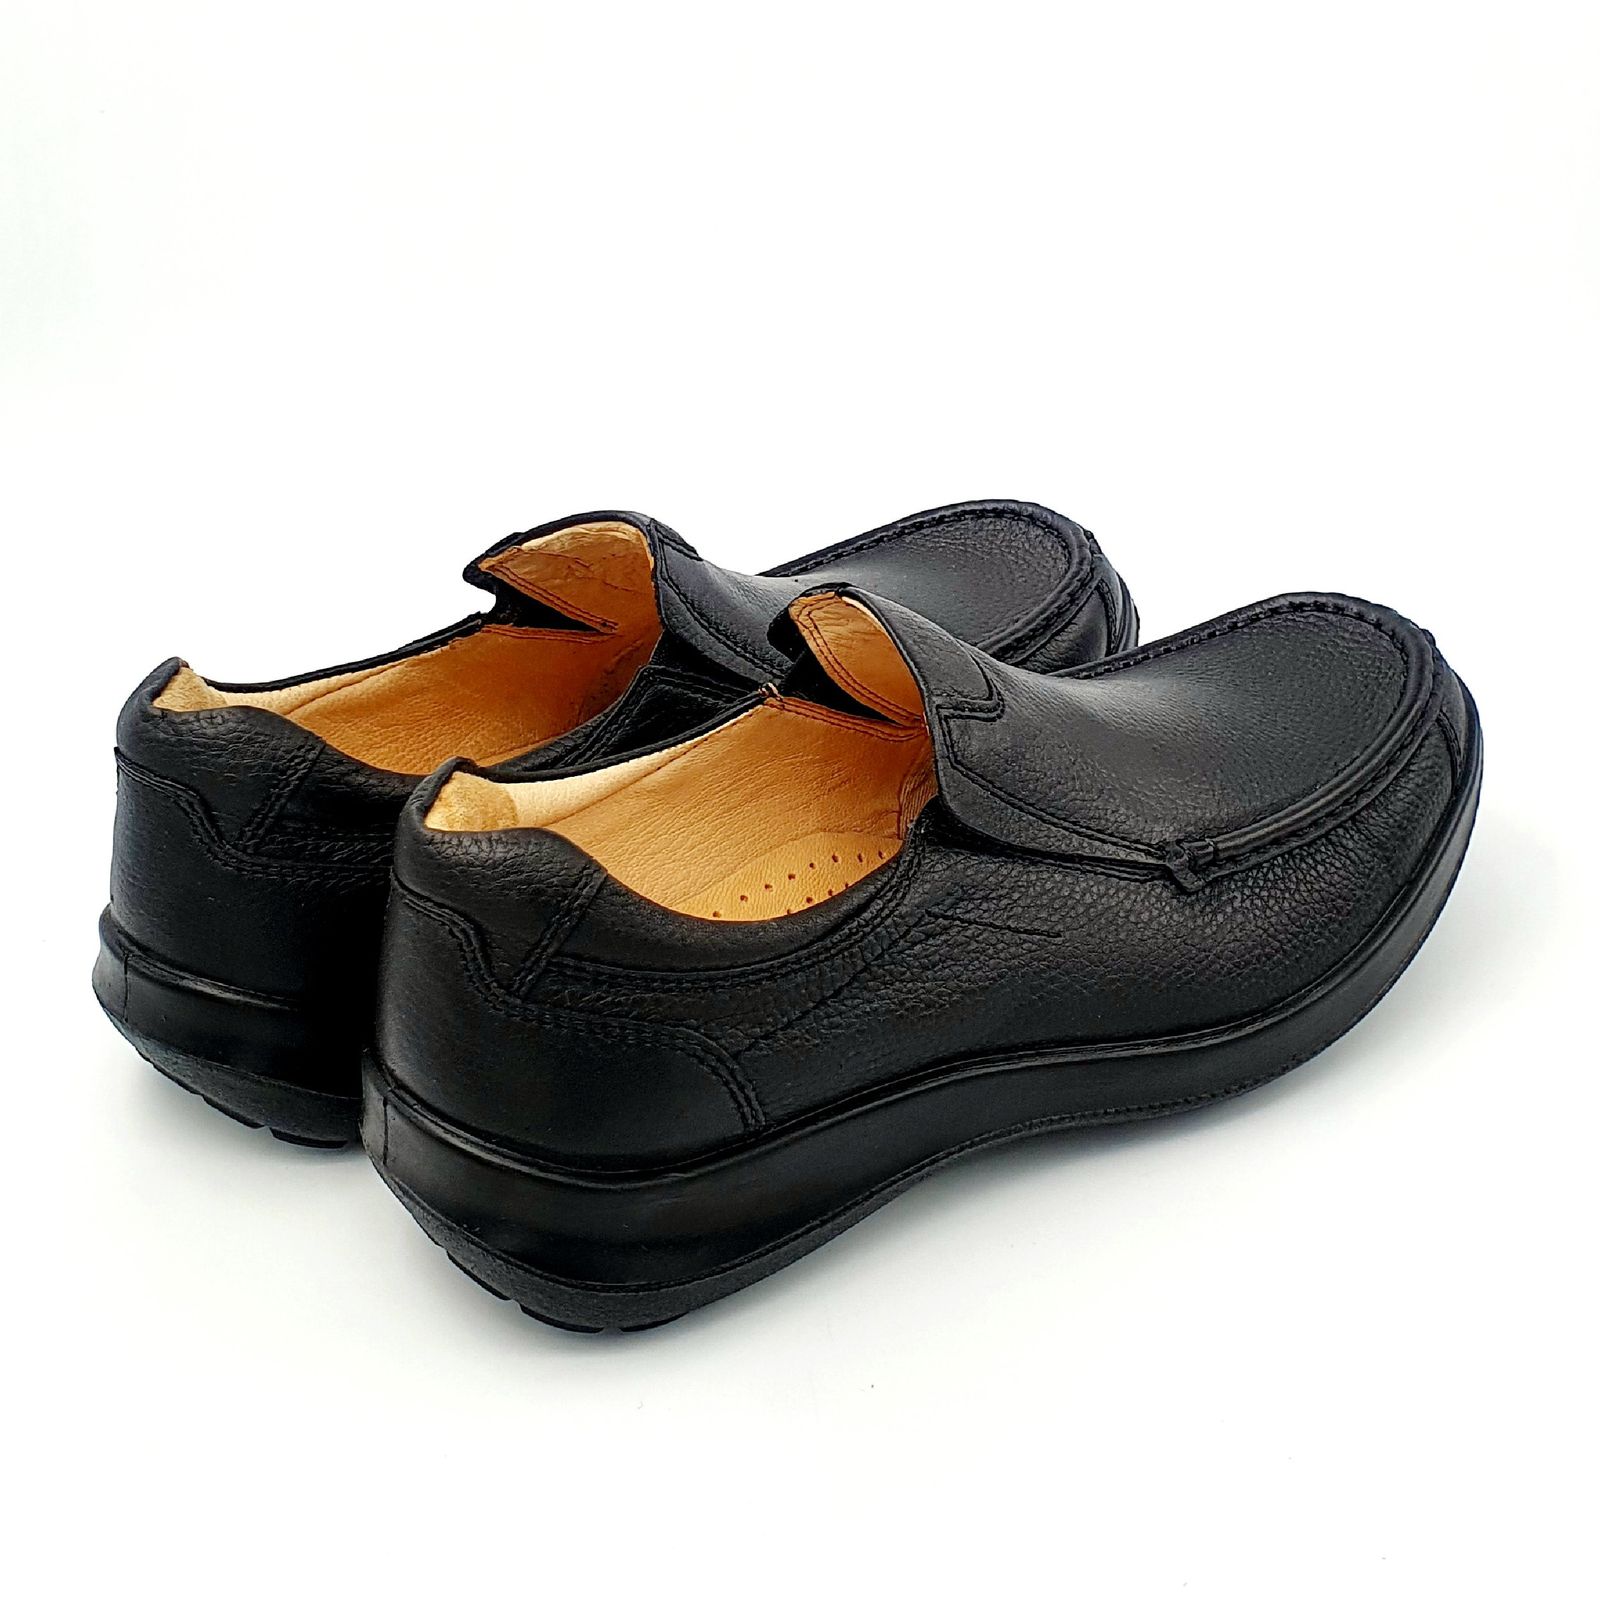 کفش روزمره مردانه شرکت کفش البرز مدل KYO کد 2383-3 -  - 3